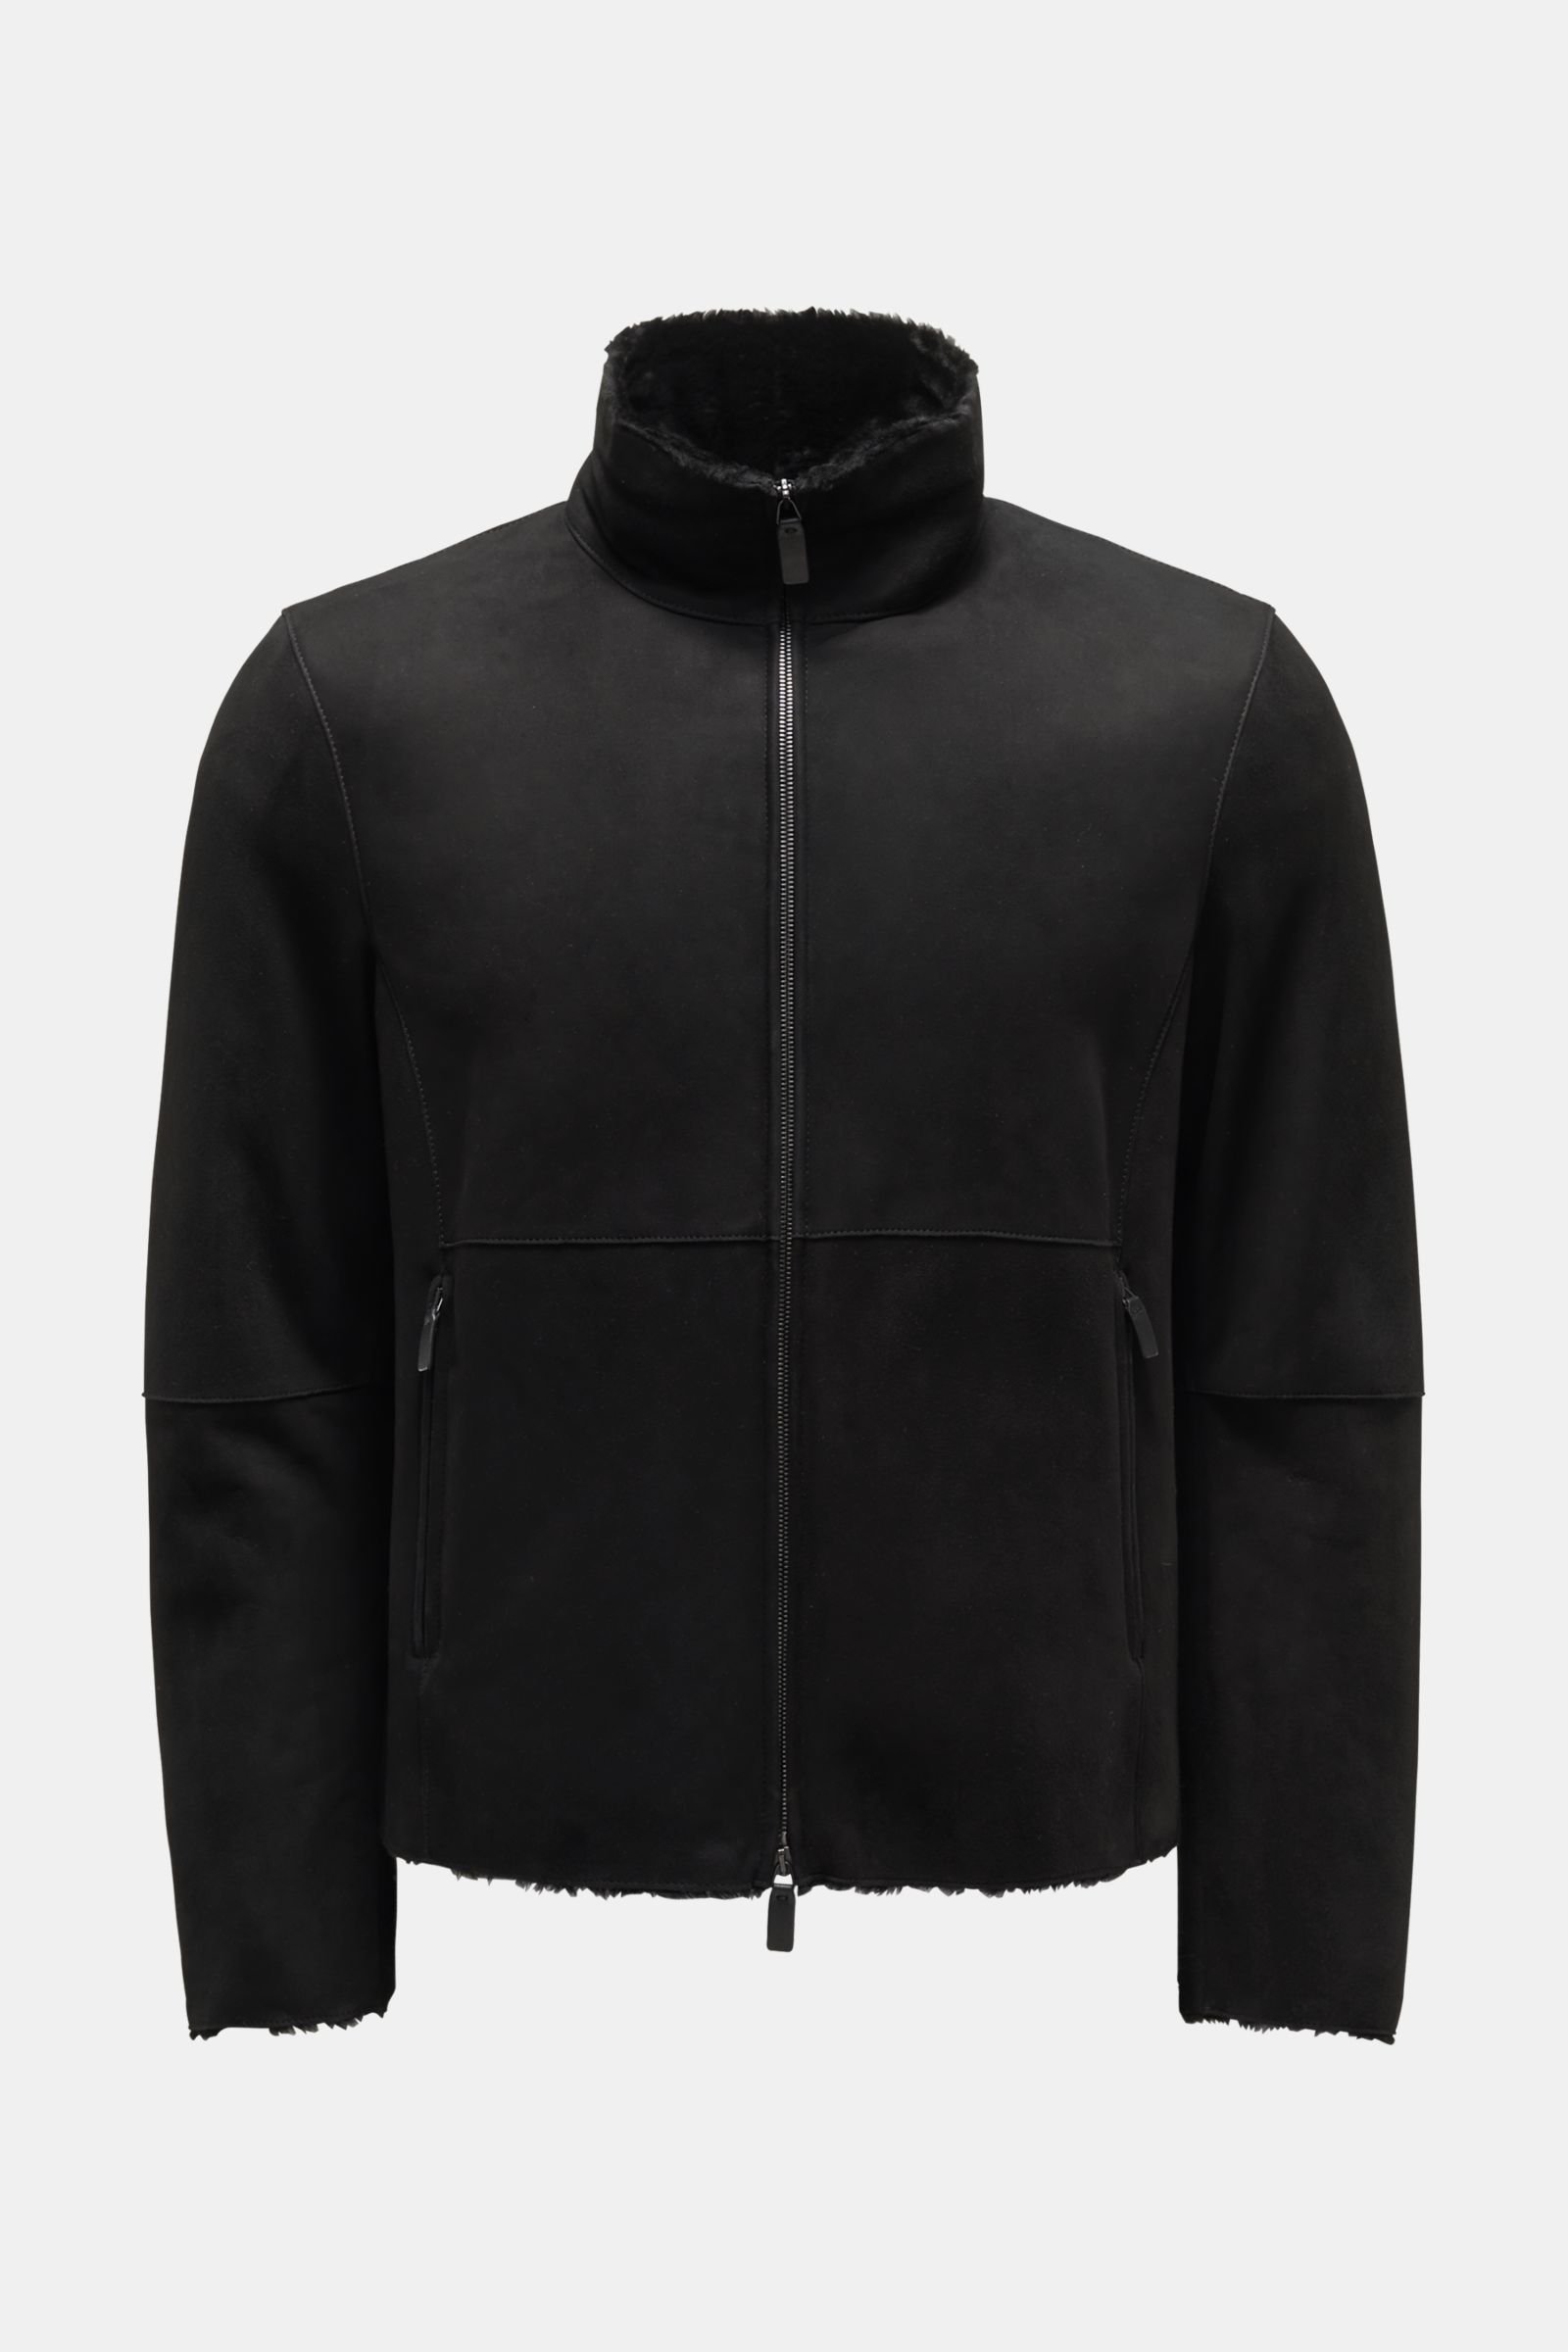 Shearling jacket black